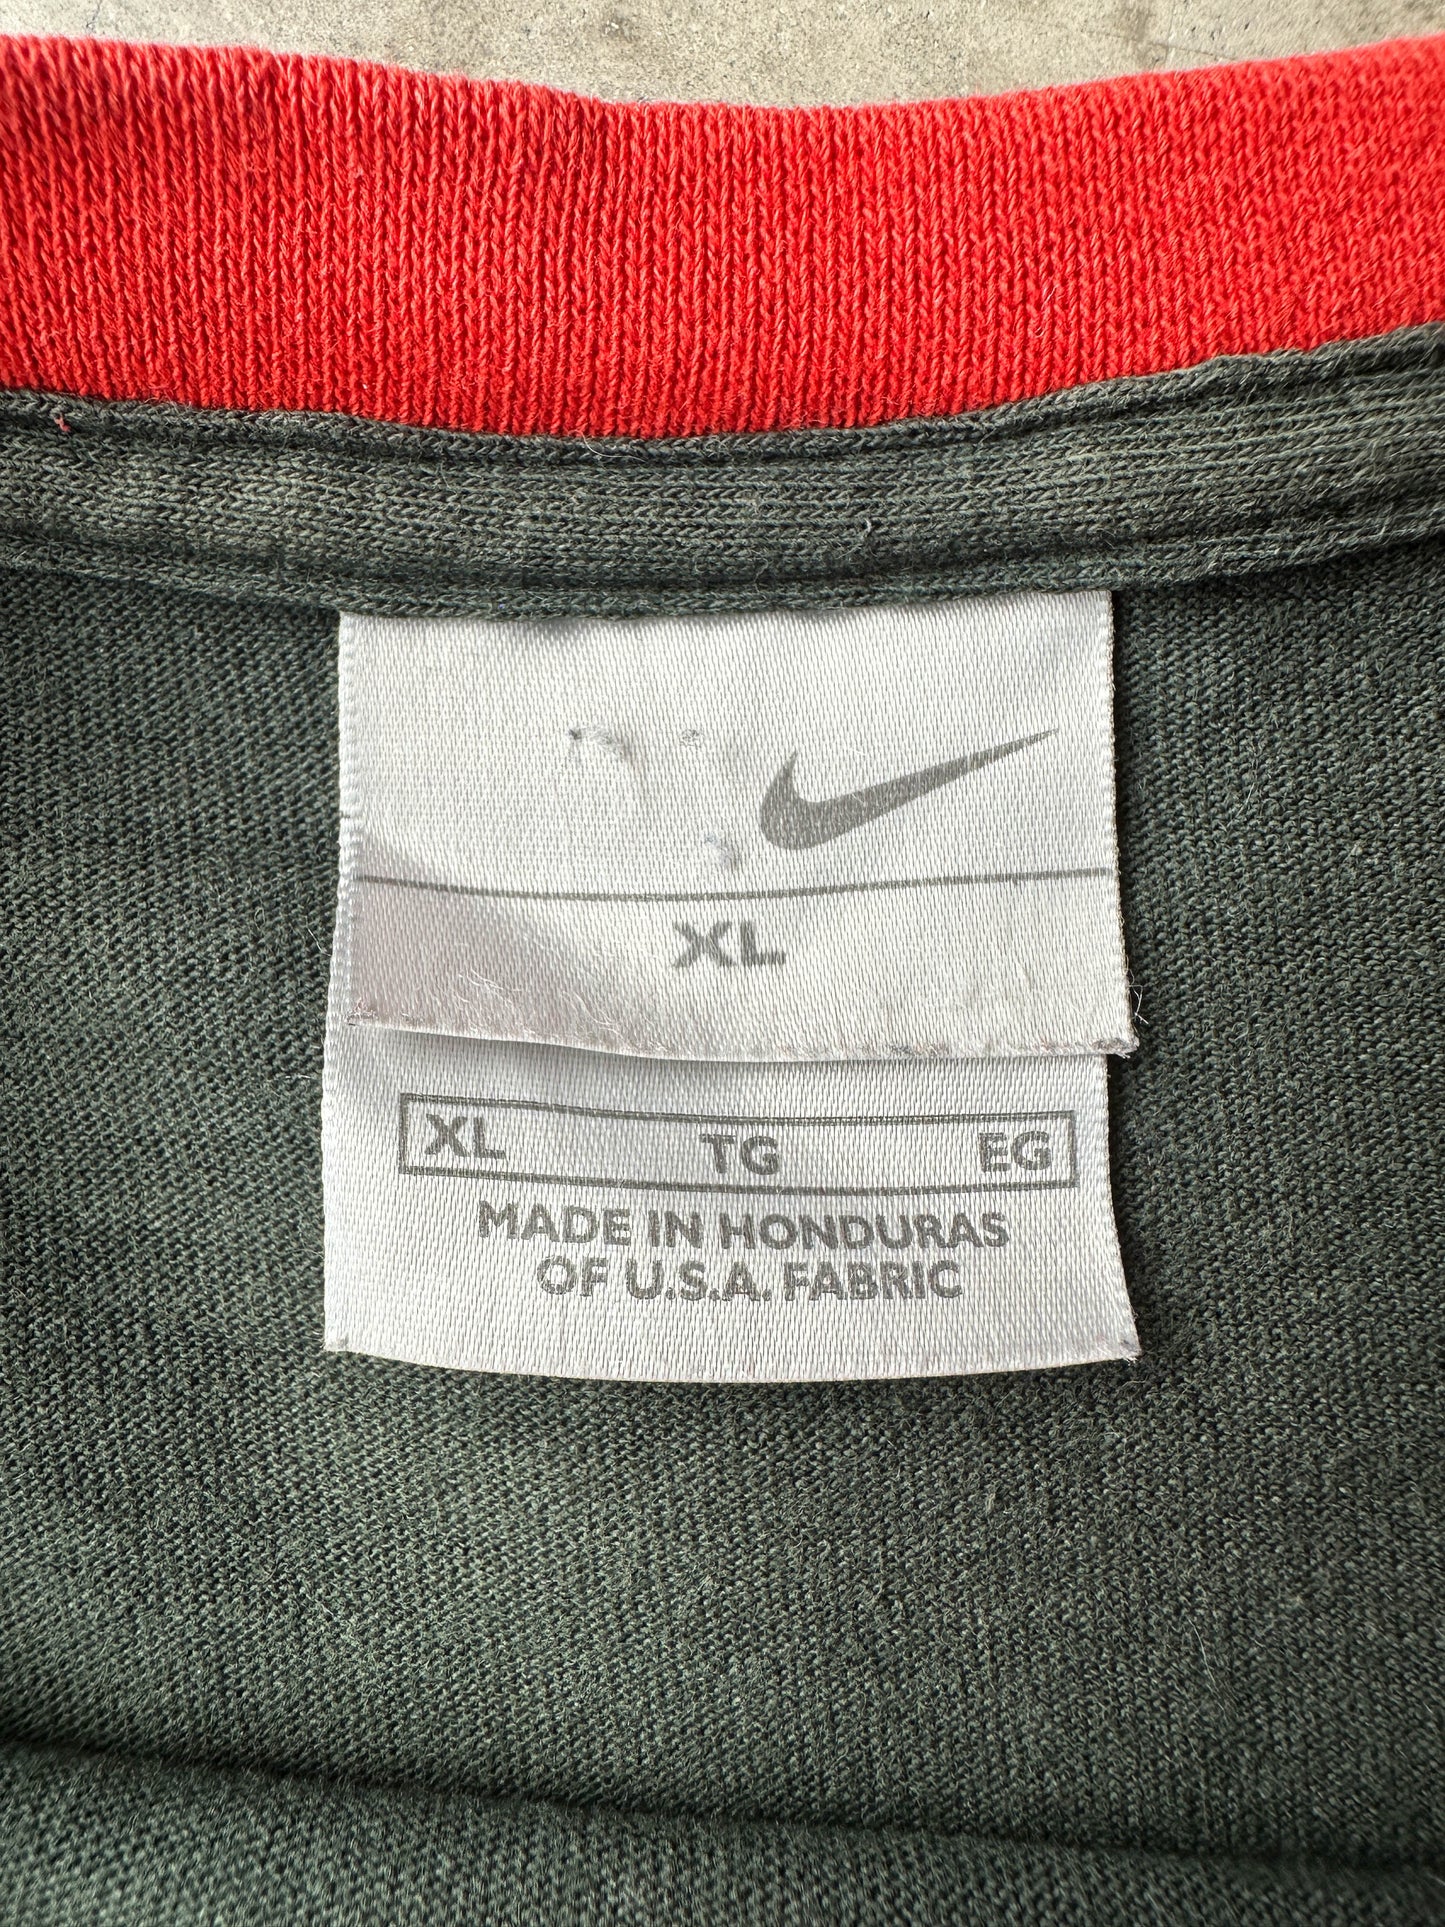 Camiseta Nike vintage 90s